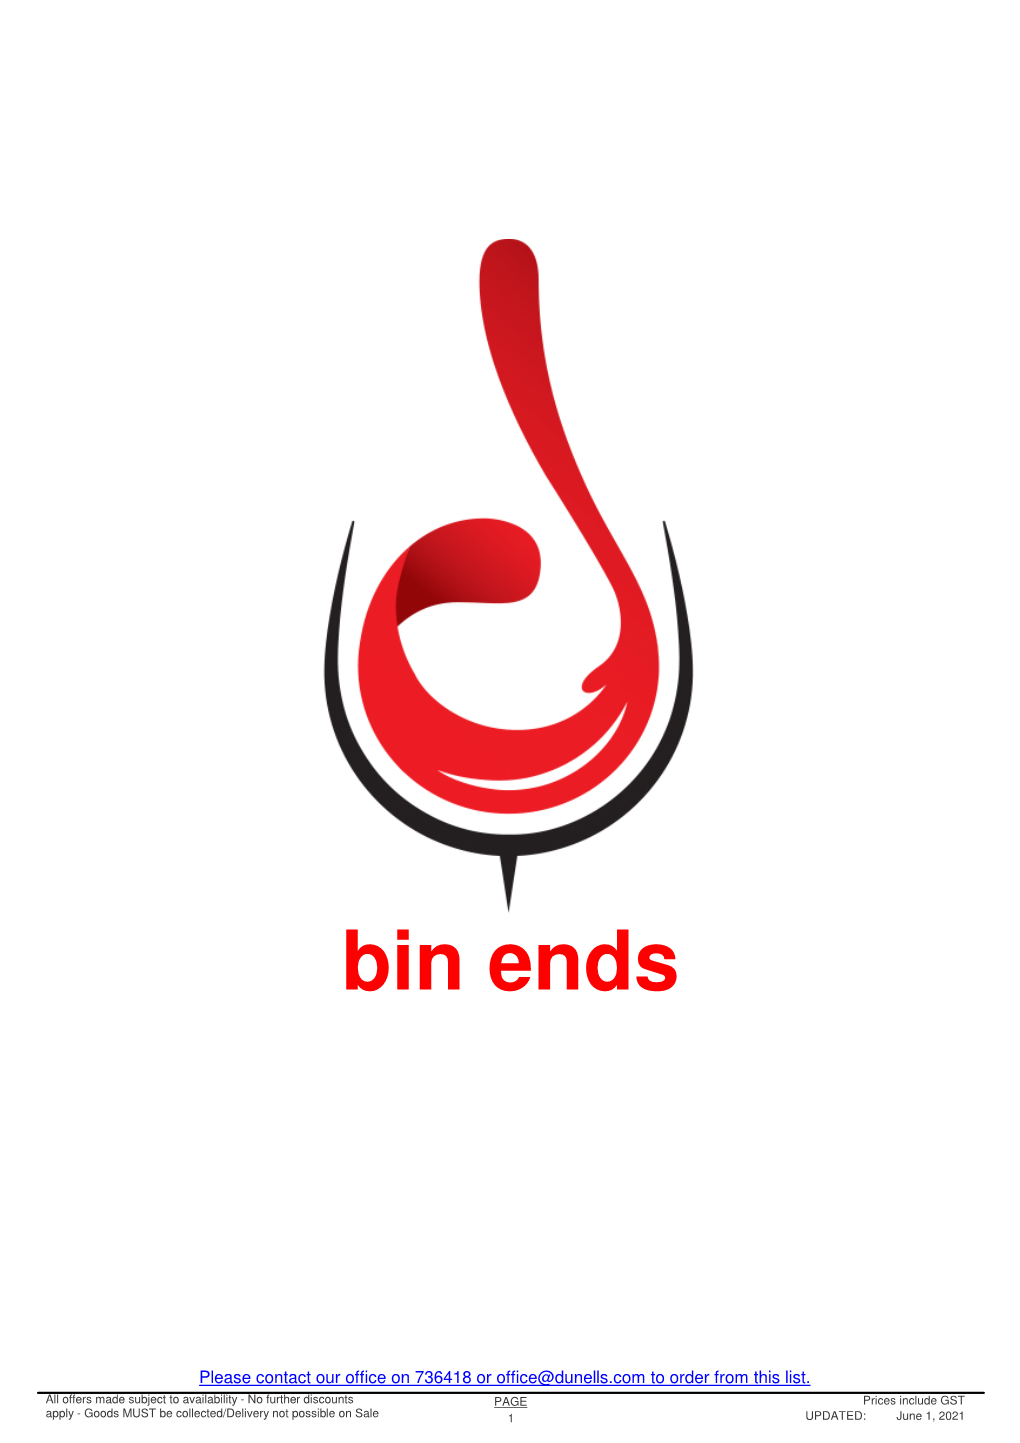 In-Store Bin End List